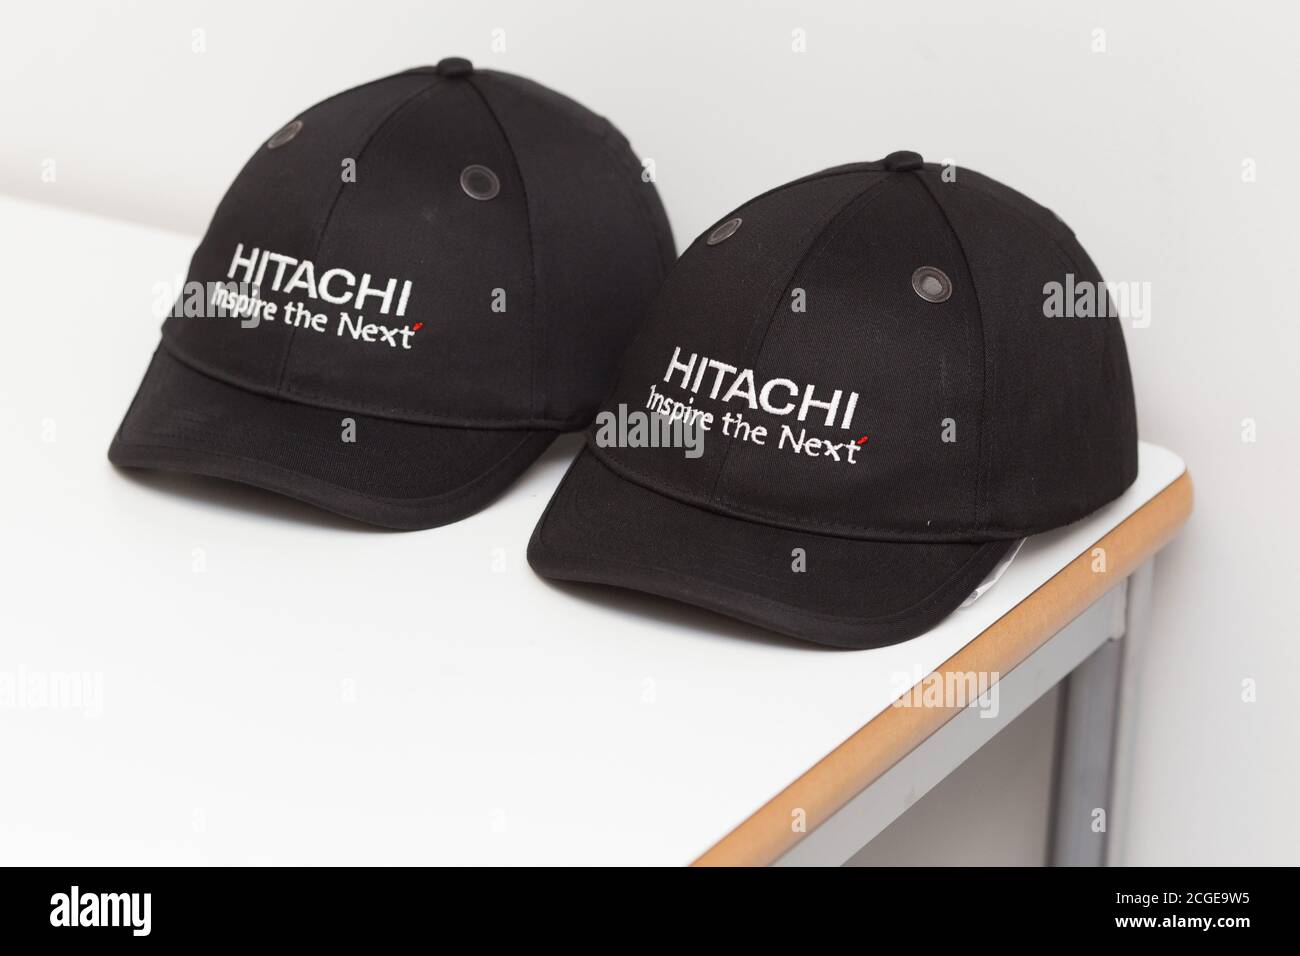 Hitachi Inspire the Next saefty caps Stock Photo - Alamy